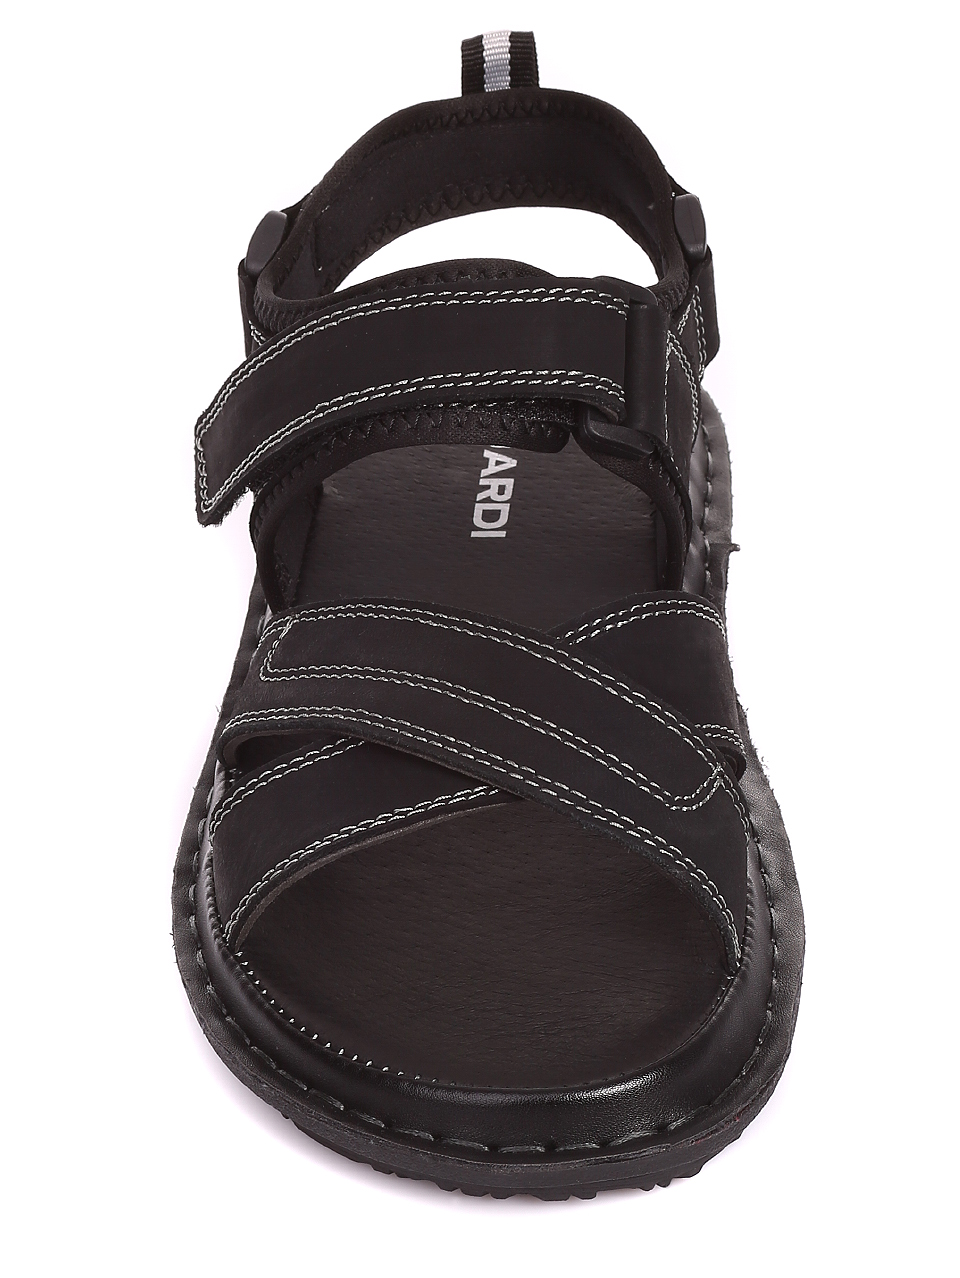 Ежедневни мъжки сандали от естествен набук 8W-20262 black